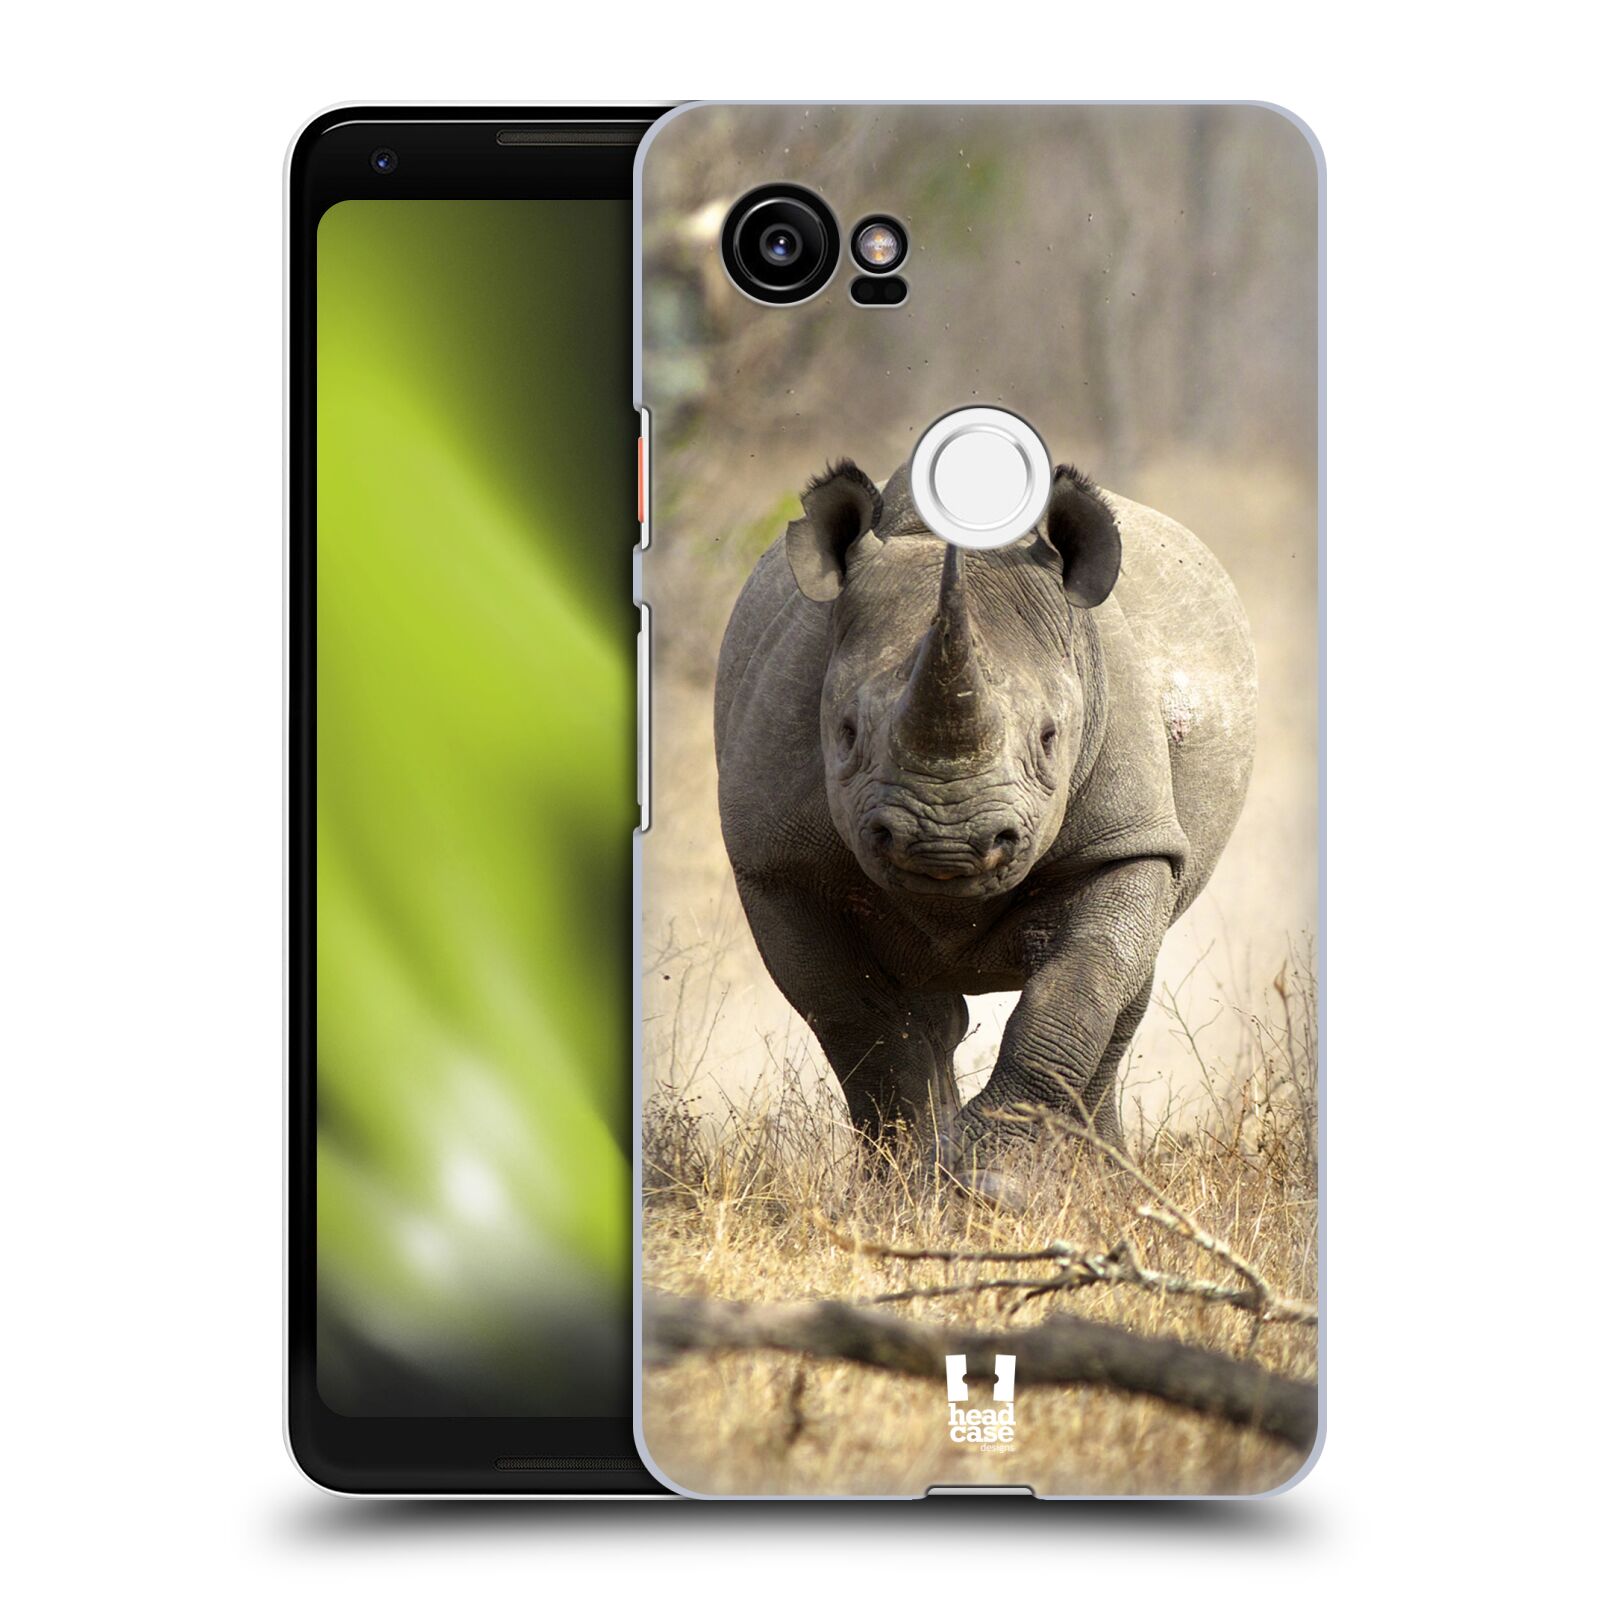 HEAD CASE plastový obal na mobil Google Pixel 2 XL vzor Divočina, Divoký život a zvířata foto AFRIKA BĚŽÍCÍ NOSOROŽEC